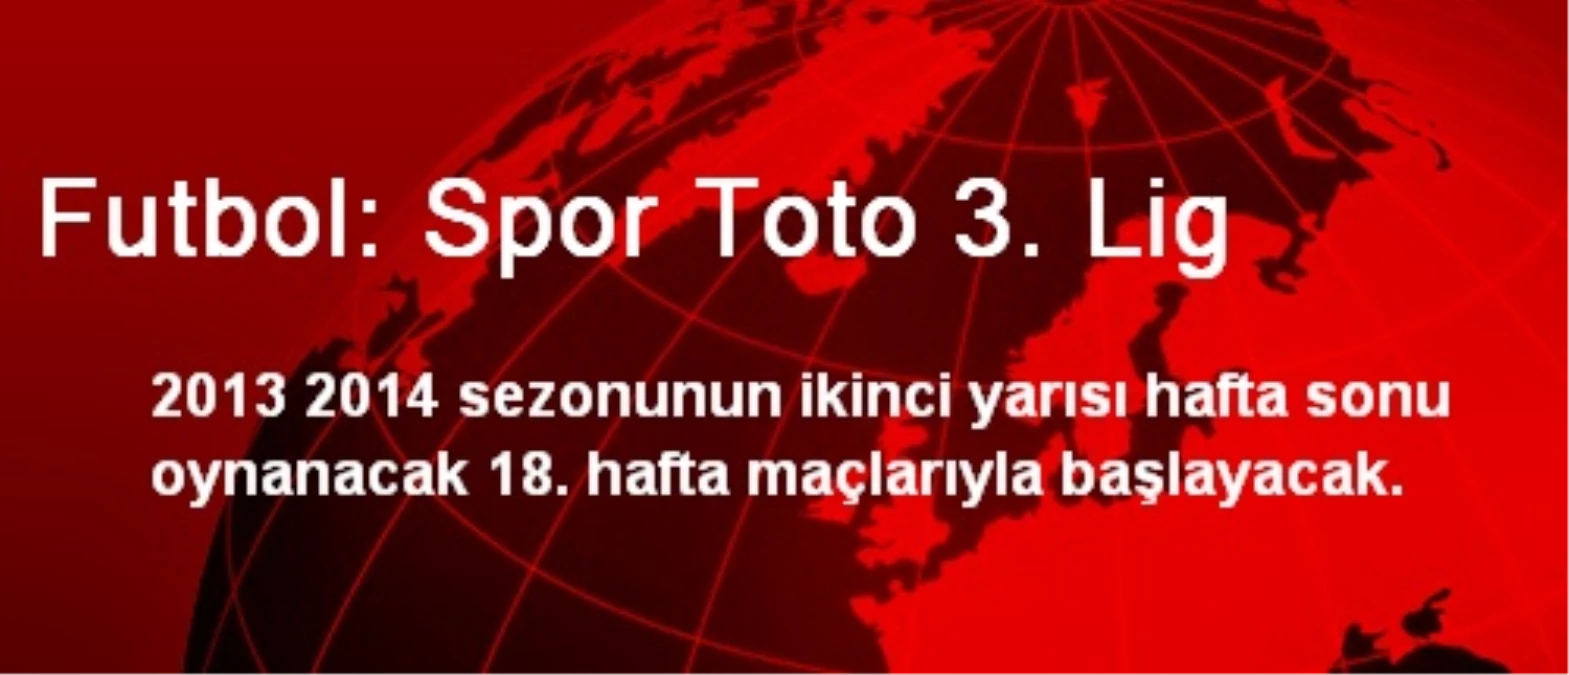 Futbol: Spor Toto 3. Lig